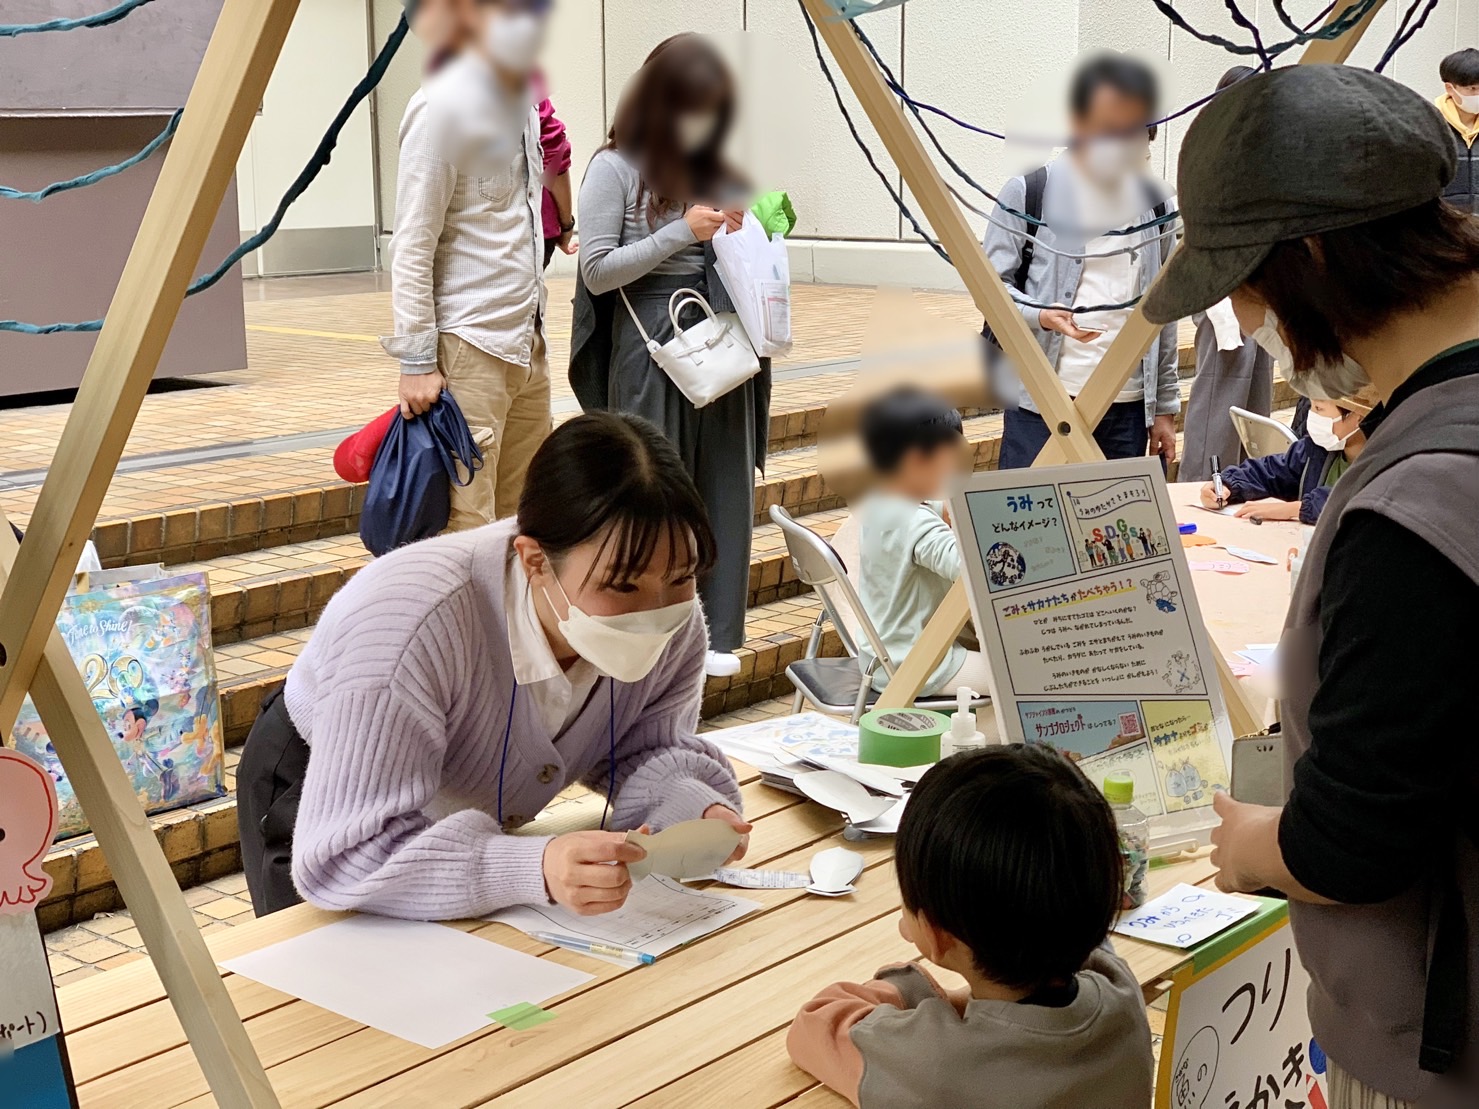 株式会社サンシャインシティが開催する「IKEBUKURO LIVING LOOP × Sunshine City PLAYPARK」内のイベントに、B-CAMP学生が企画協力